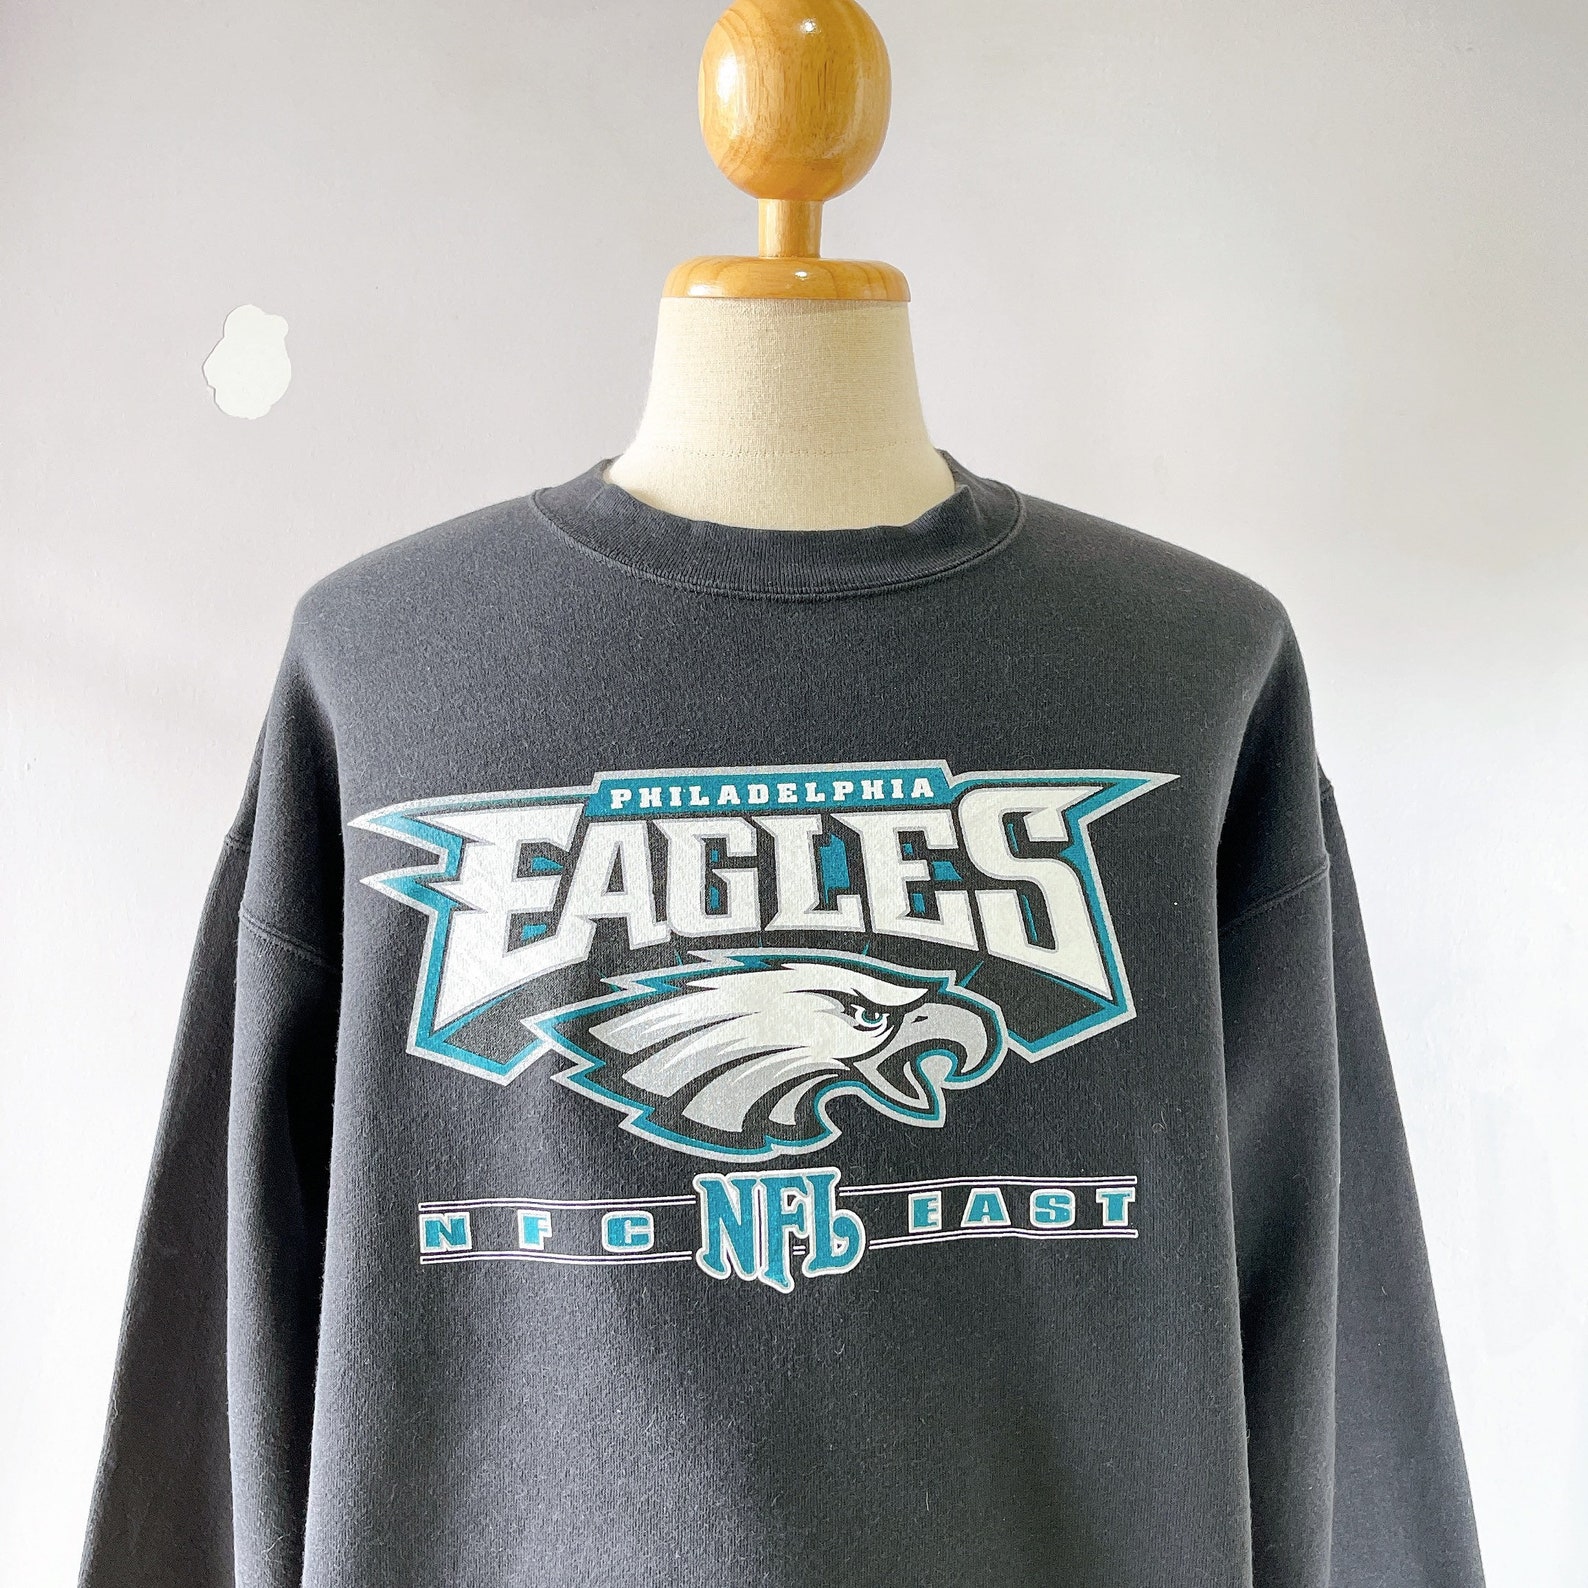 Vintage Philadelphia Eagles NFL Football Sweatshirt size L | Etsy